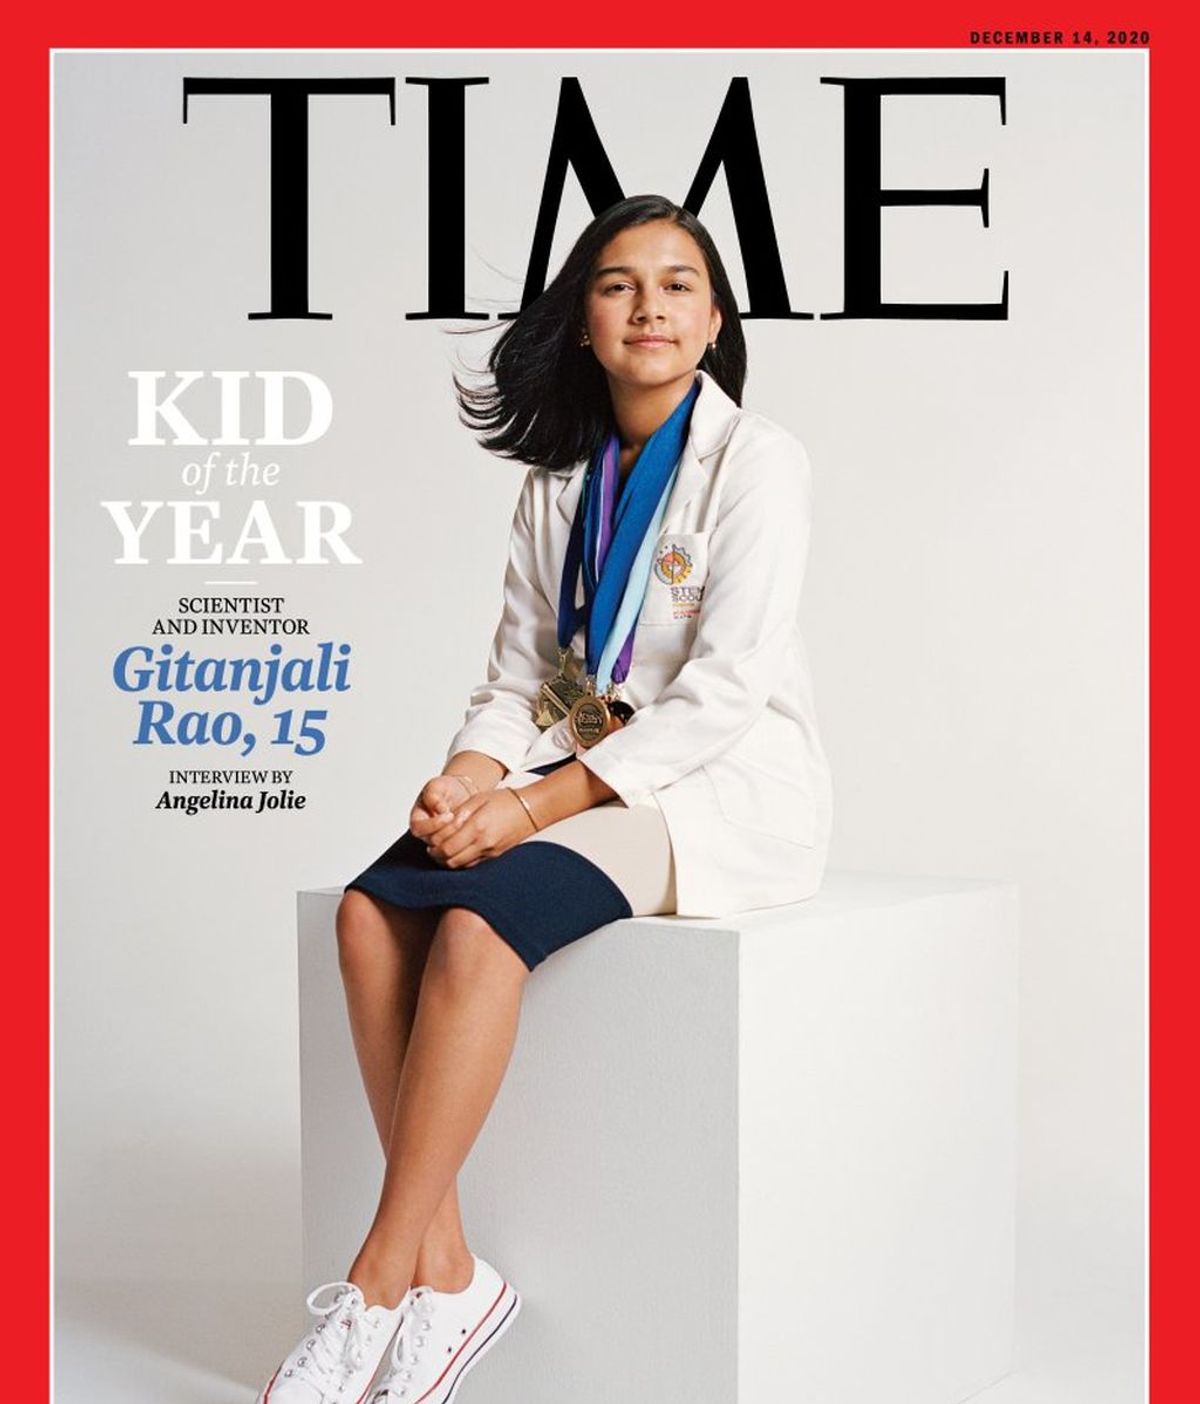 Gitanjali Rao, científica de 15 años, elegida 'Niña del año por Times por dedicarse a "resolver los problemas del mundo".